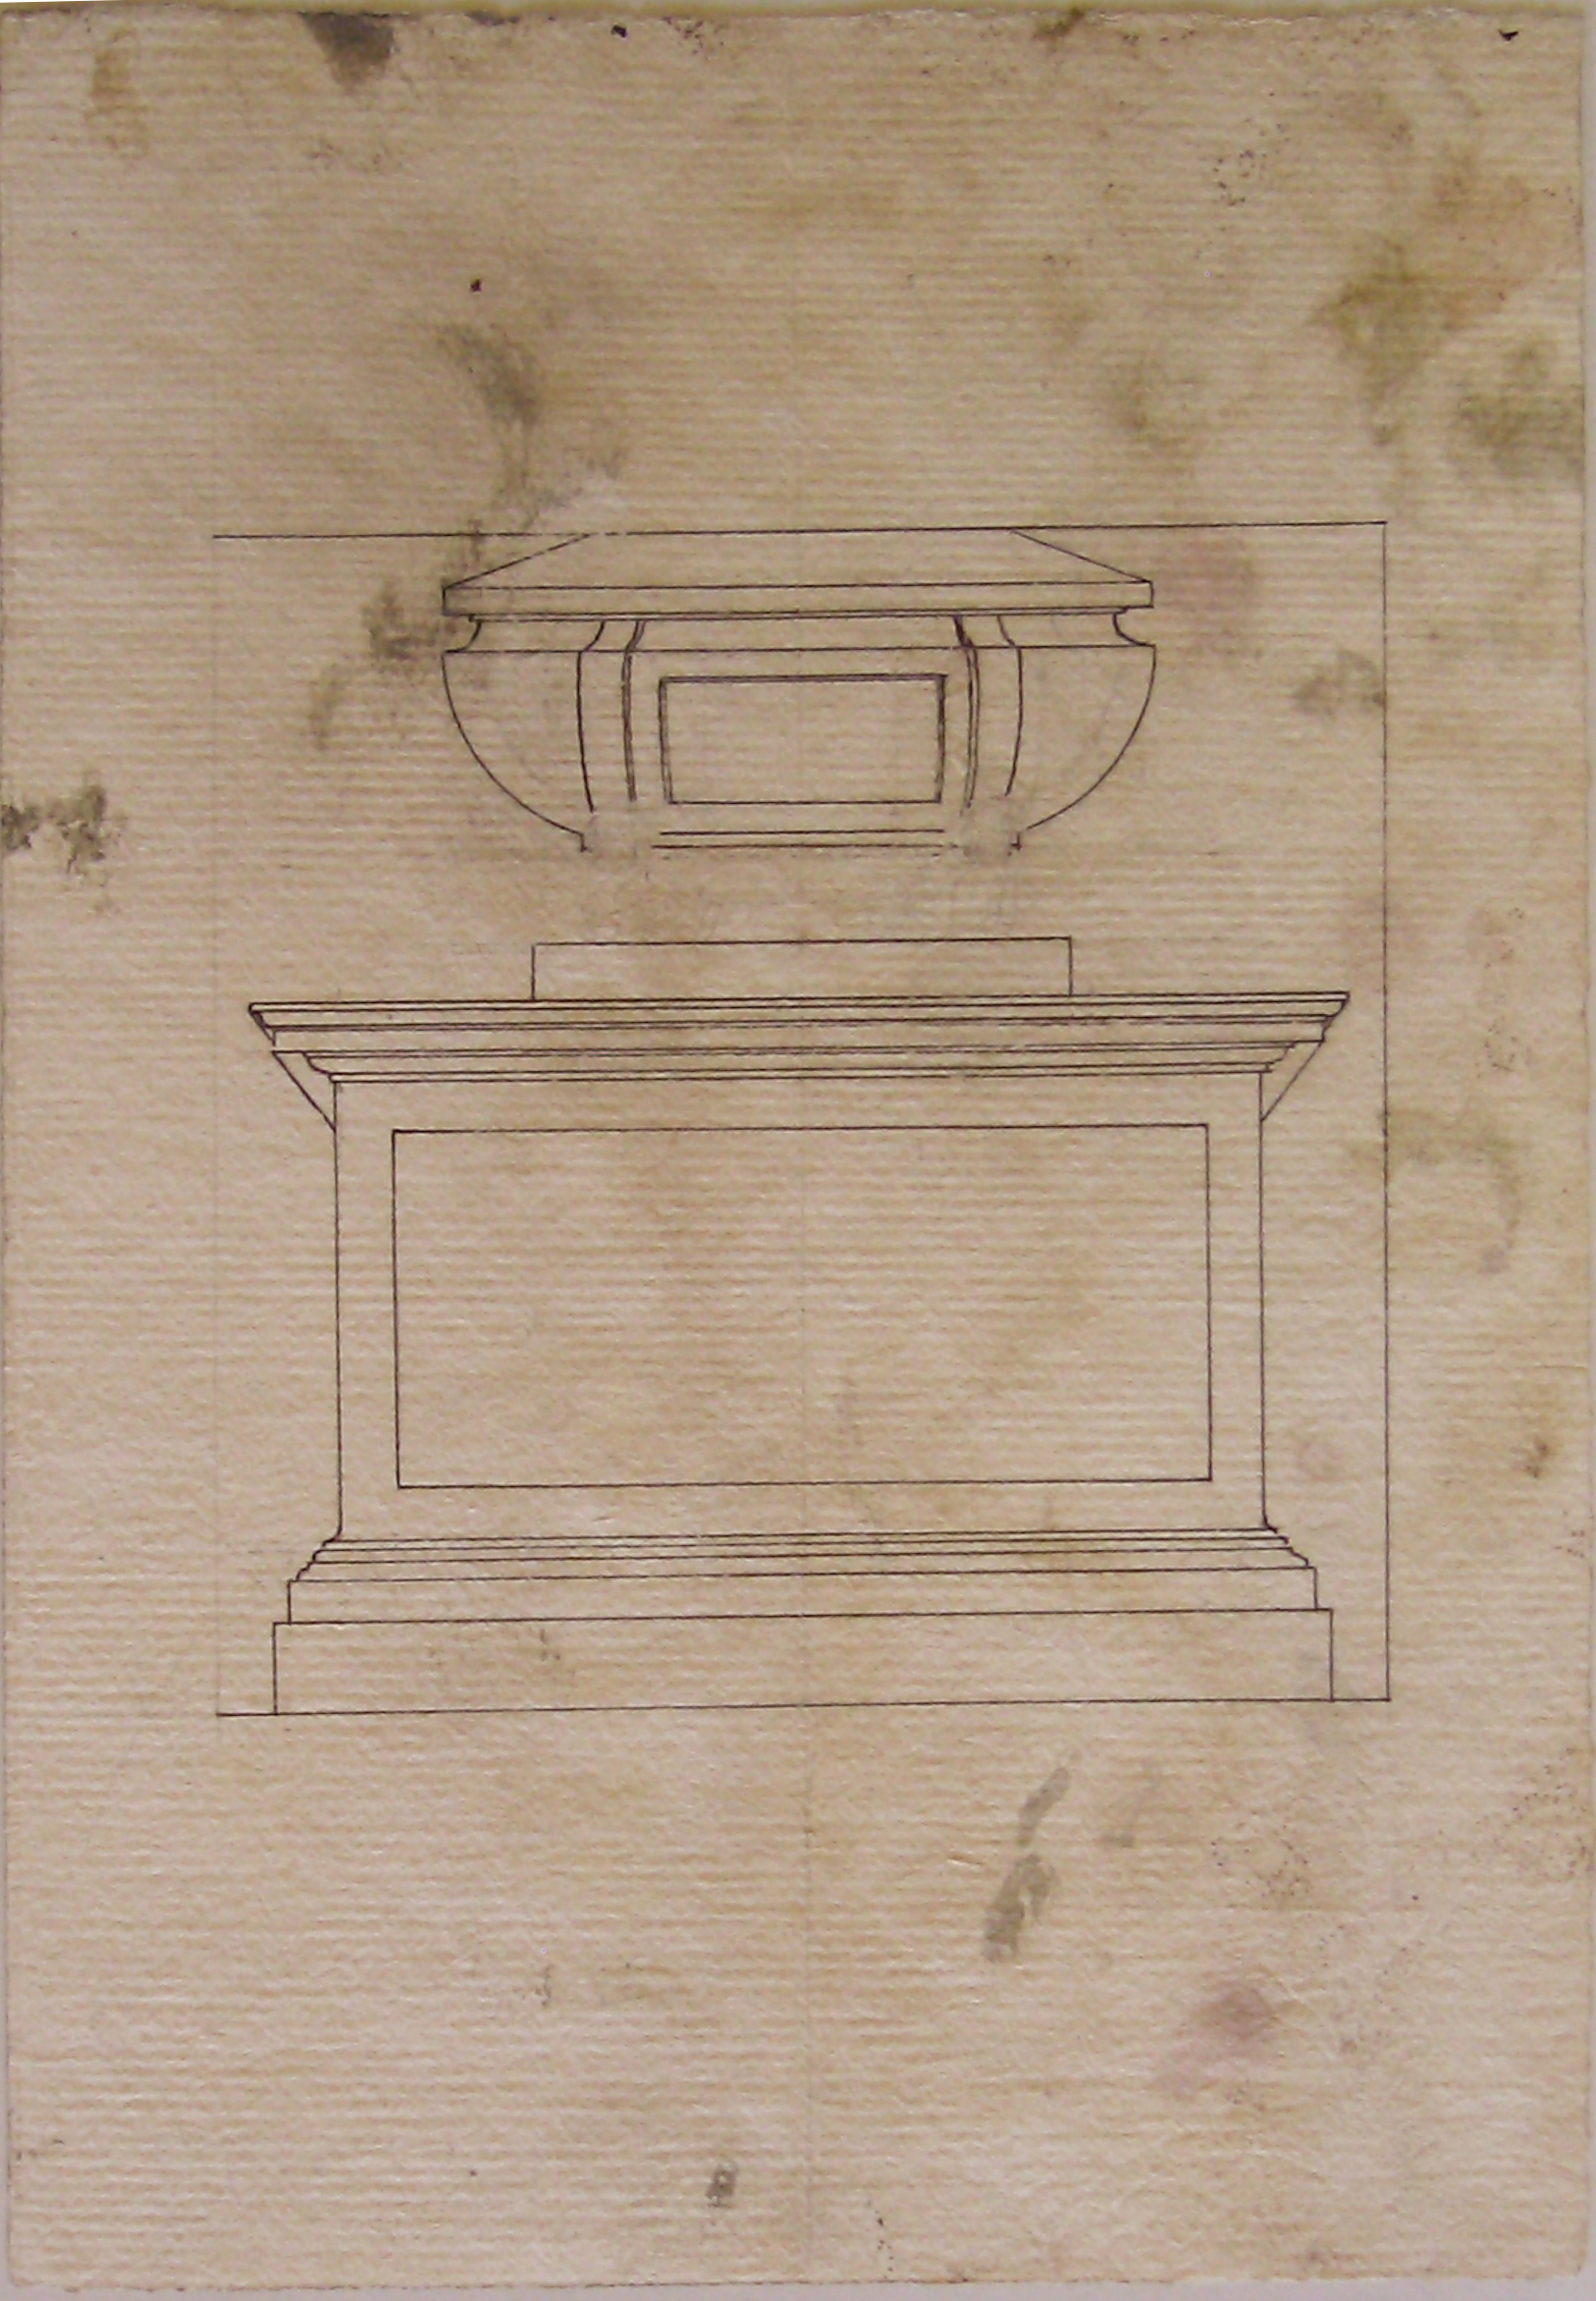 Progetto architettonico: prospetto di sarcofago (disegno architettonico) - ambito lombardo (sec. XIX)